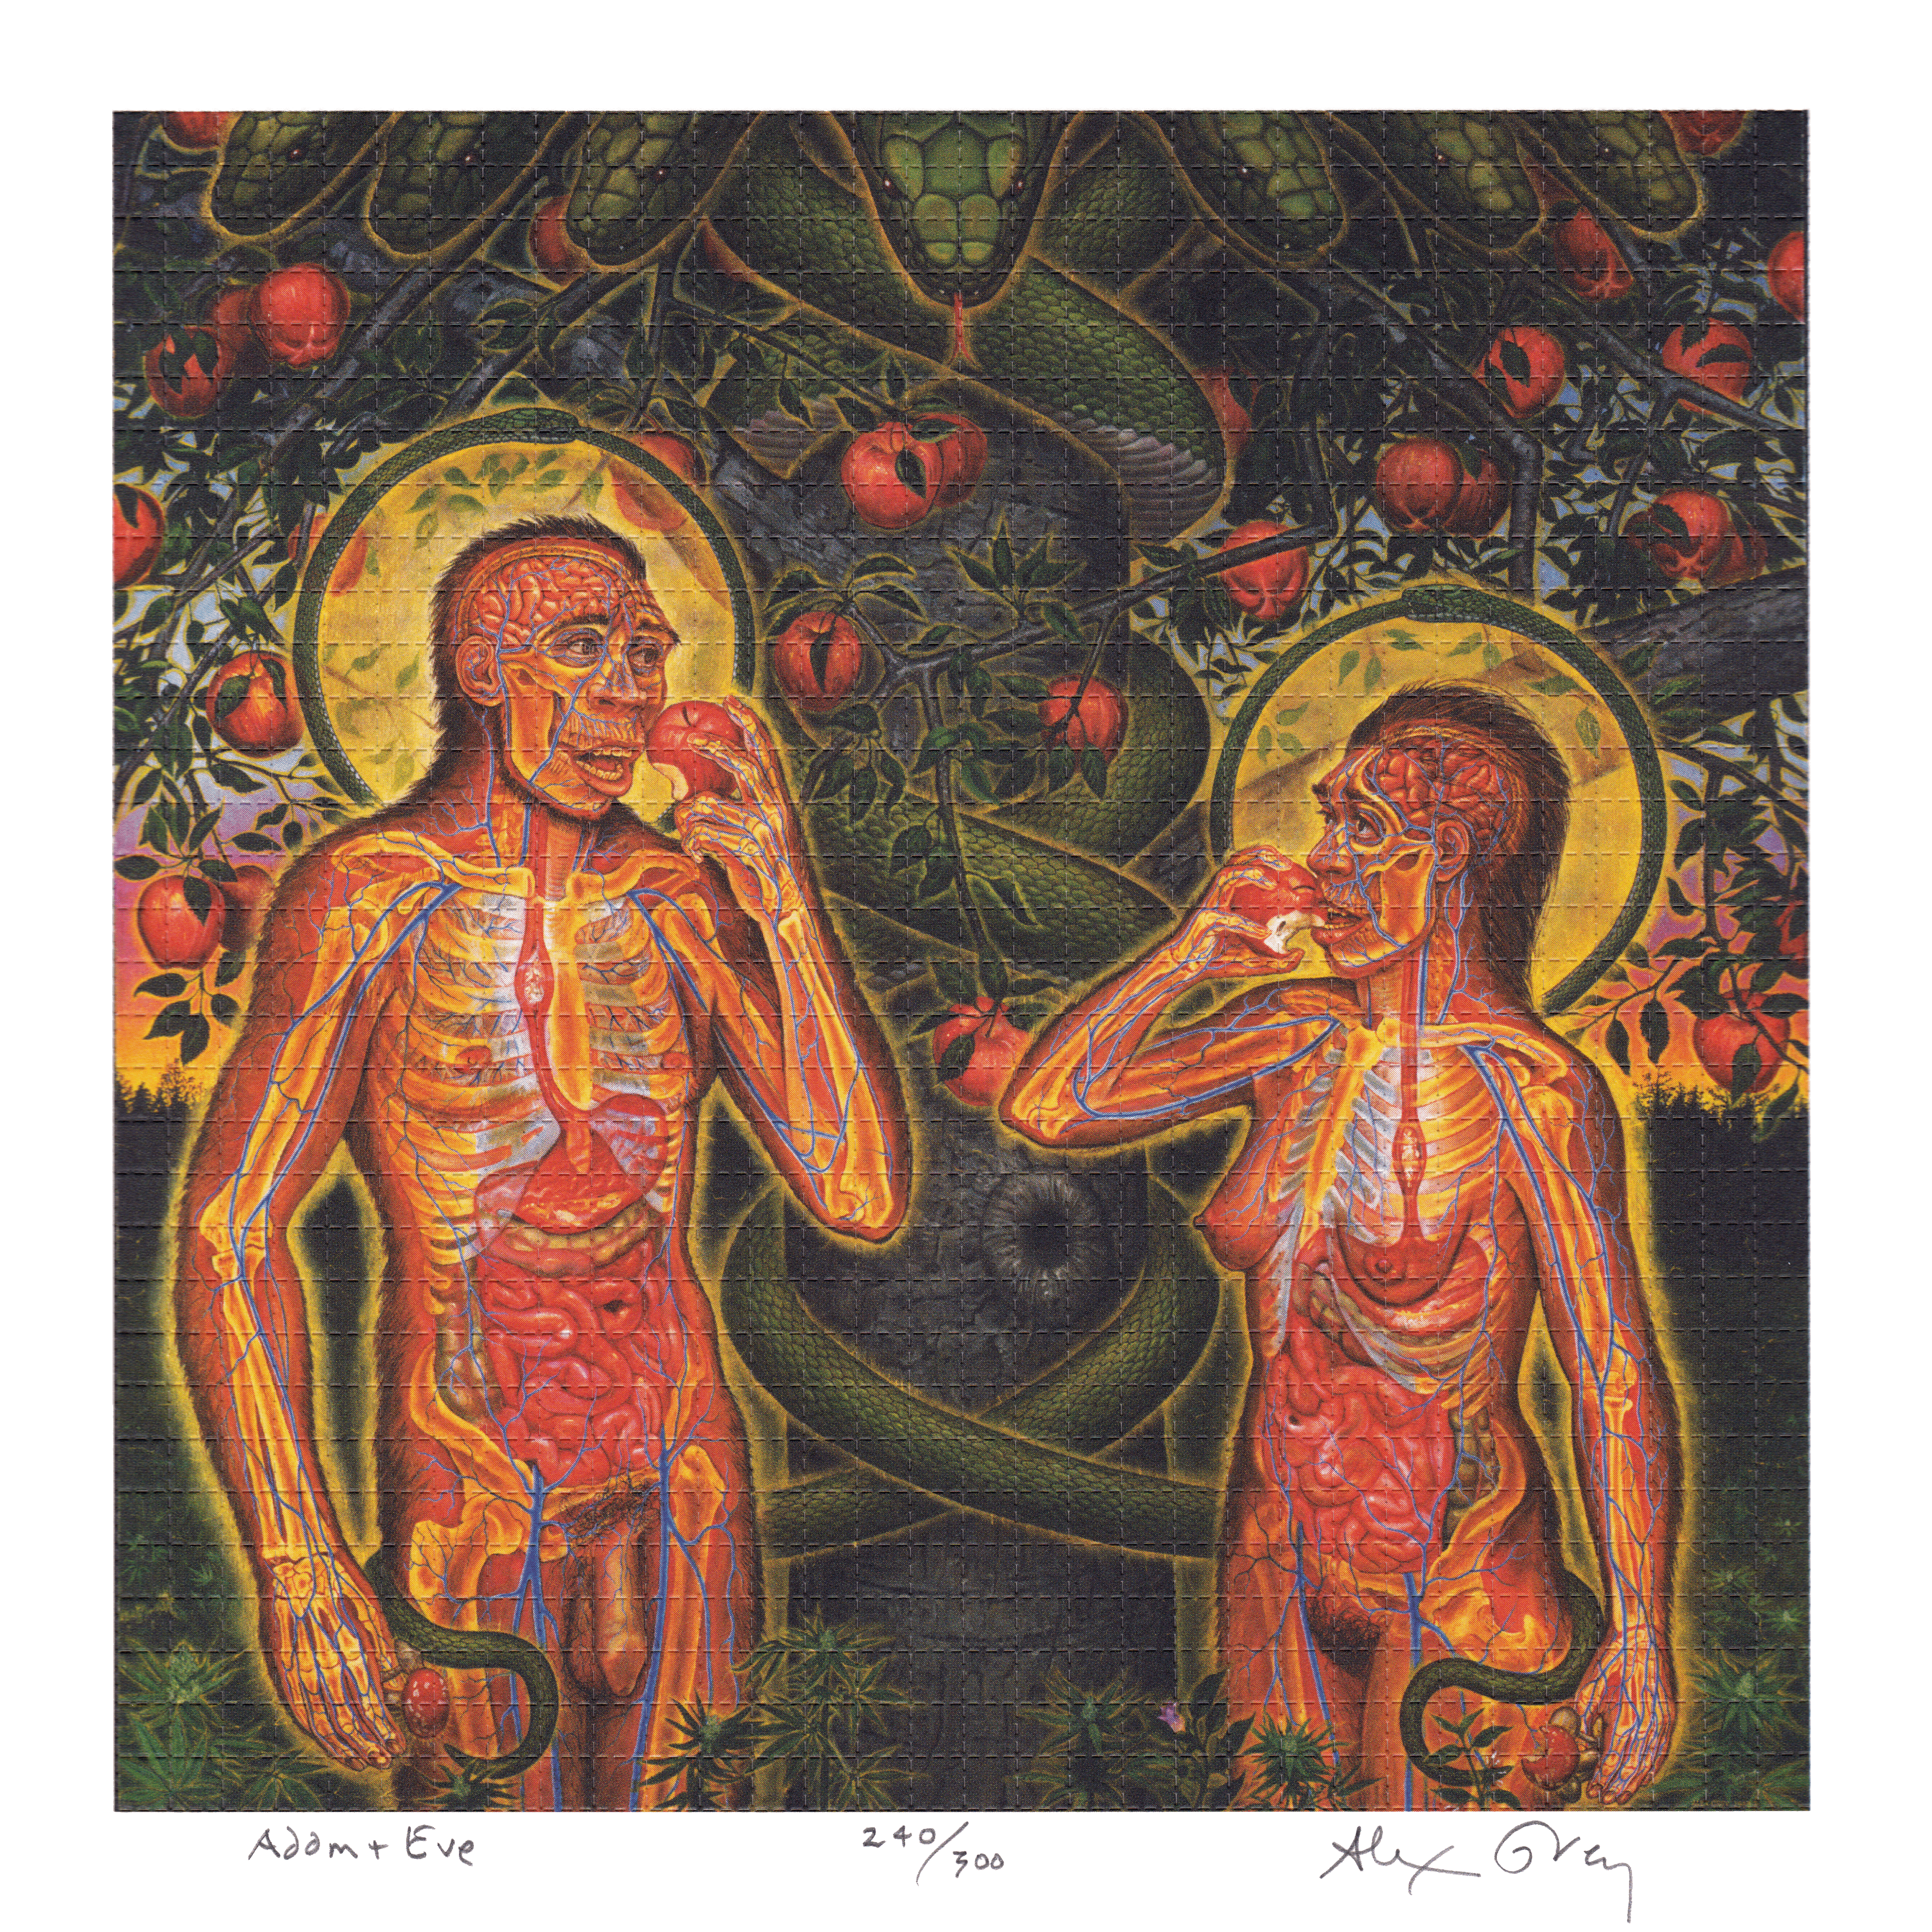 Adam & Eve by Alex Grey as LSD Blotter Art #240/300